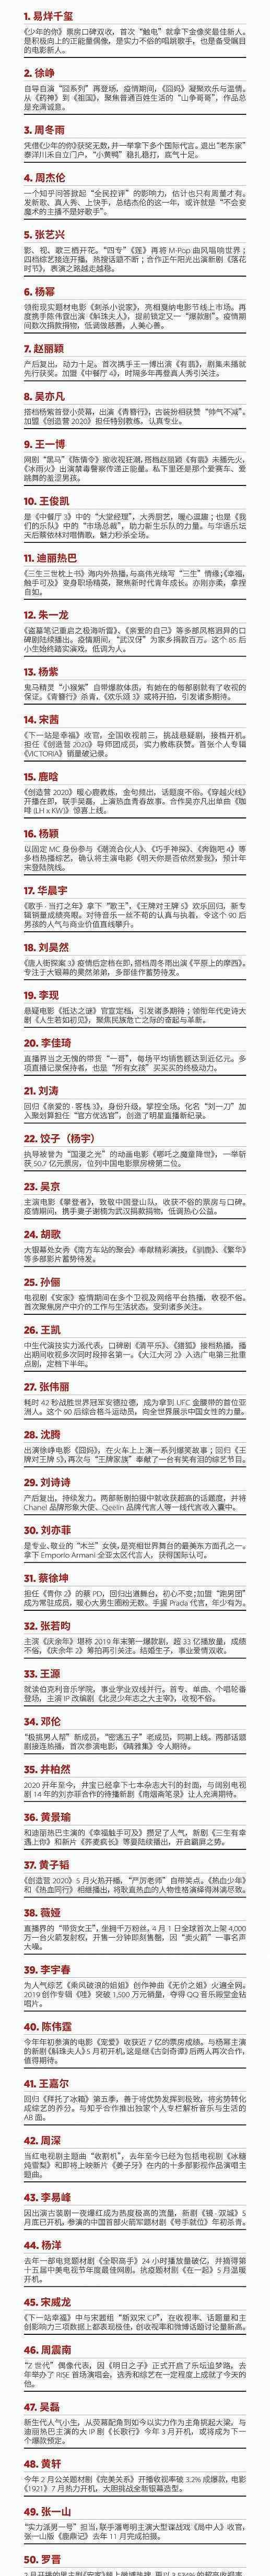 福布斯中国名人榜武磊第57 分别有哪些人上榜